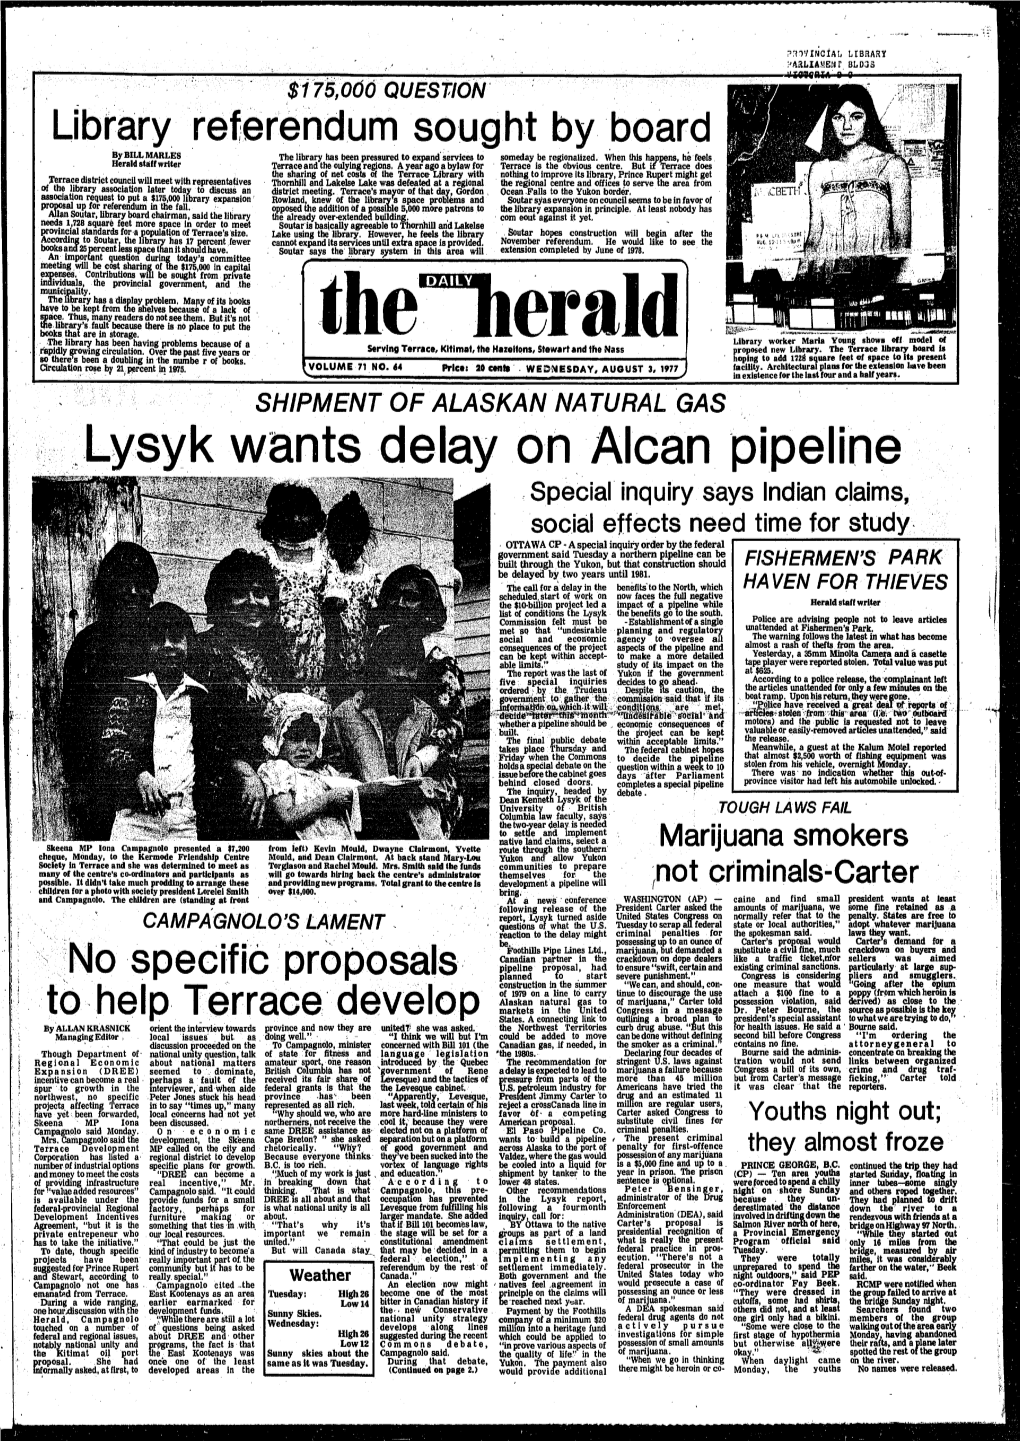 Lysyk Wants Delay on Alcan Pipeline